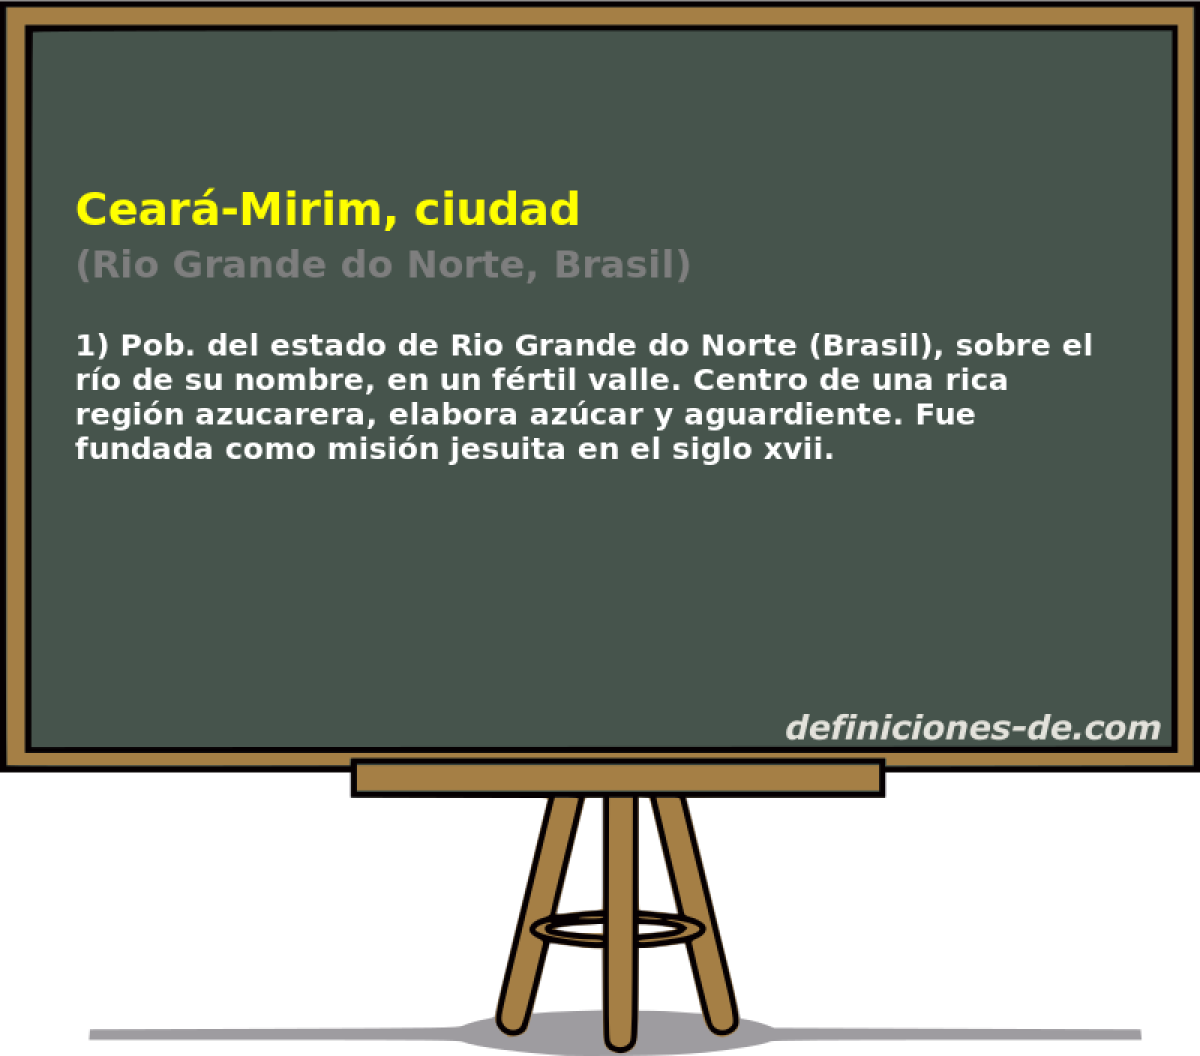 Cear-Mirim, ciudad (Rio Grande do Norte, Brasil)